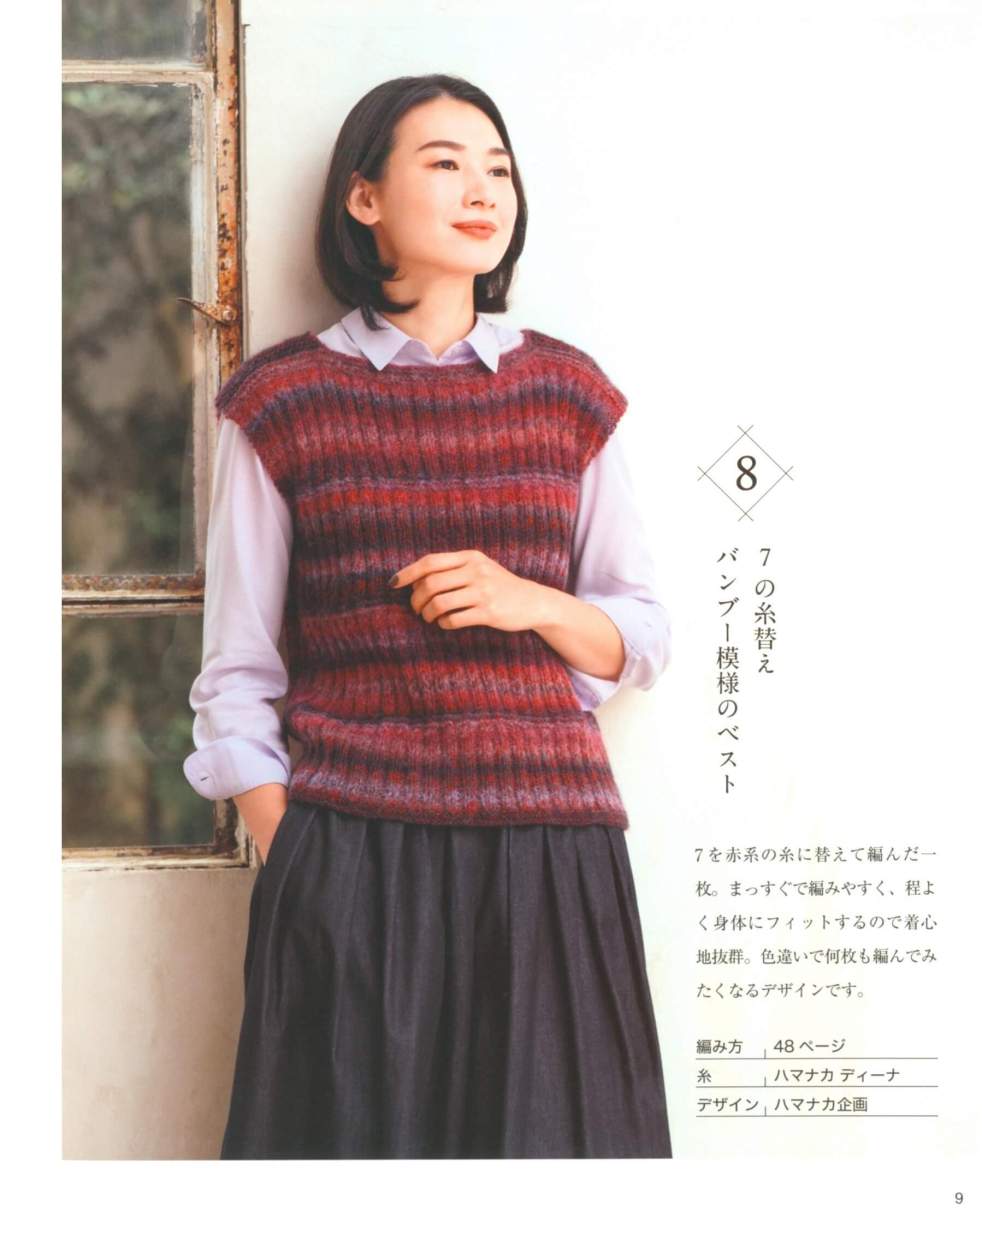 Easy knit vest pattern